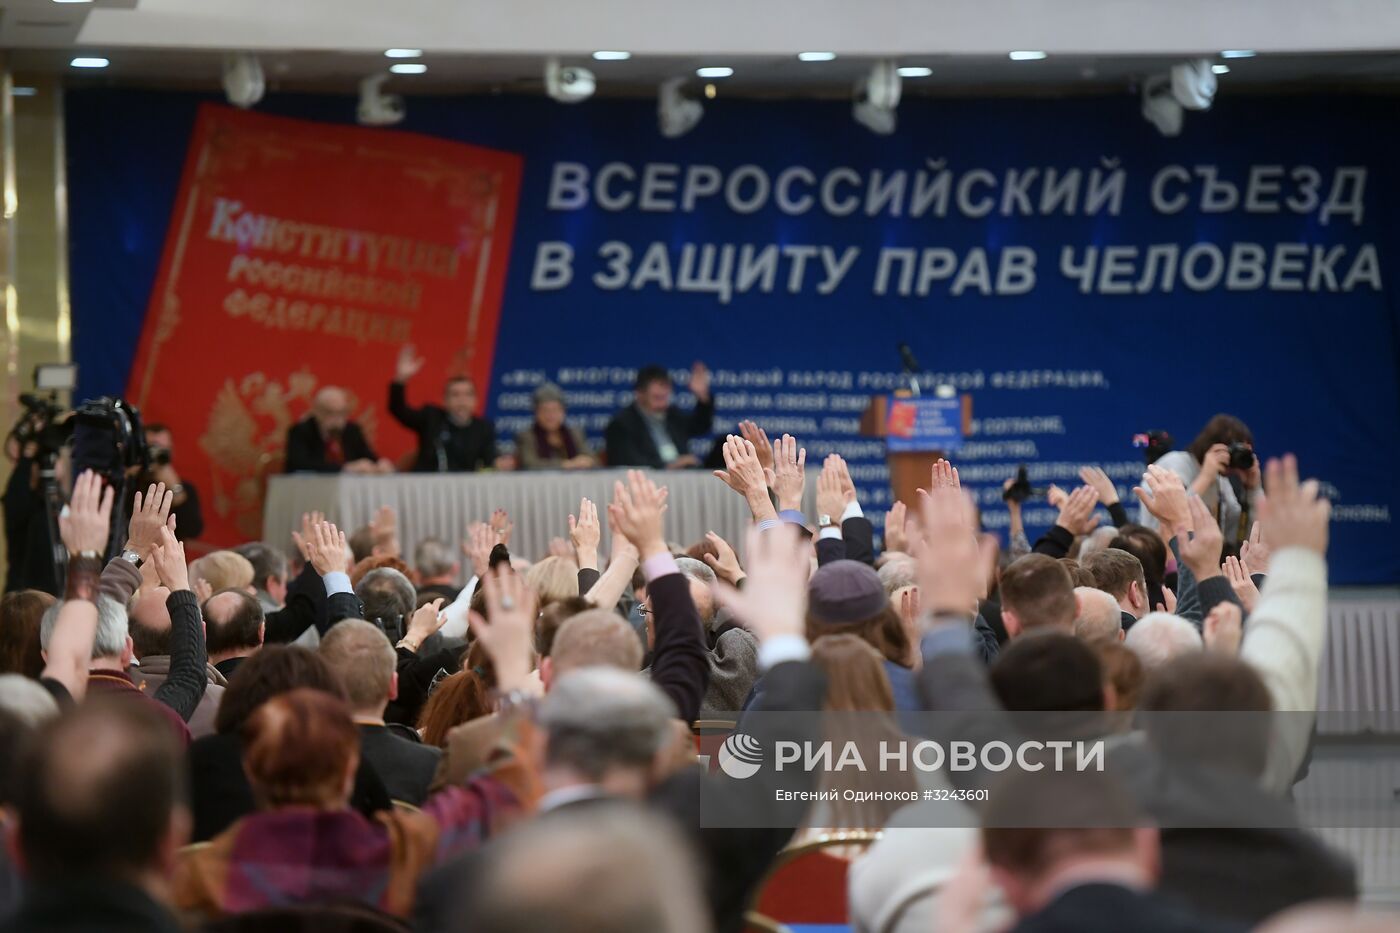 Всероссийский съезд в защиту прав человека